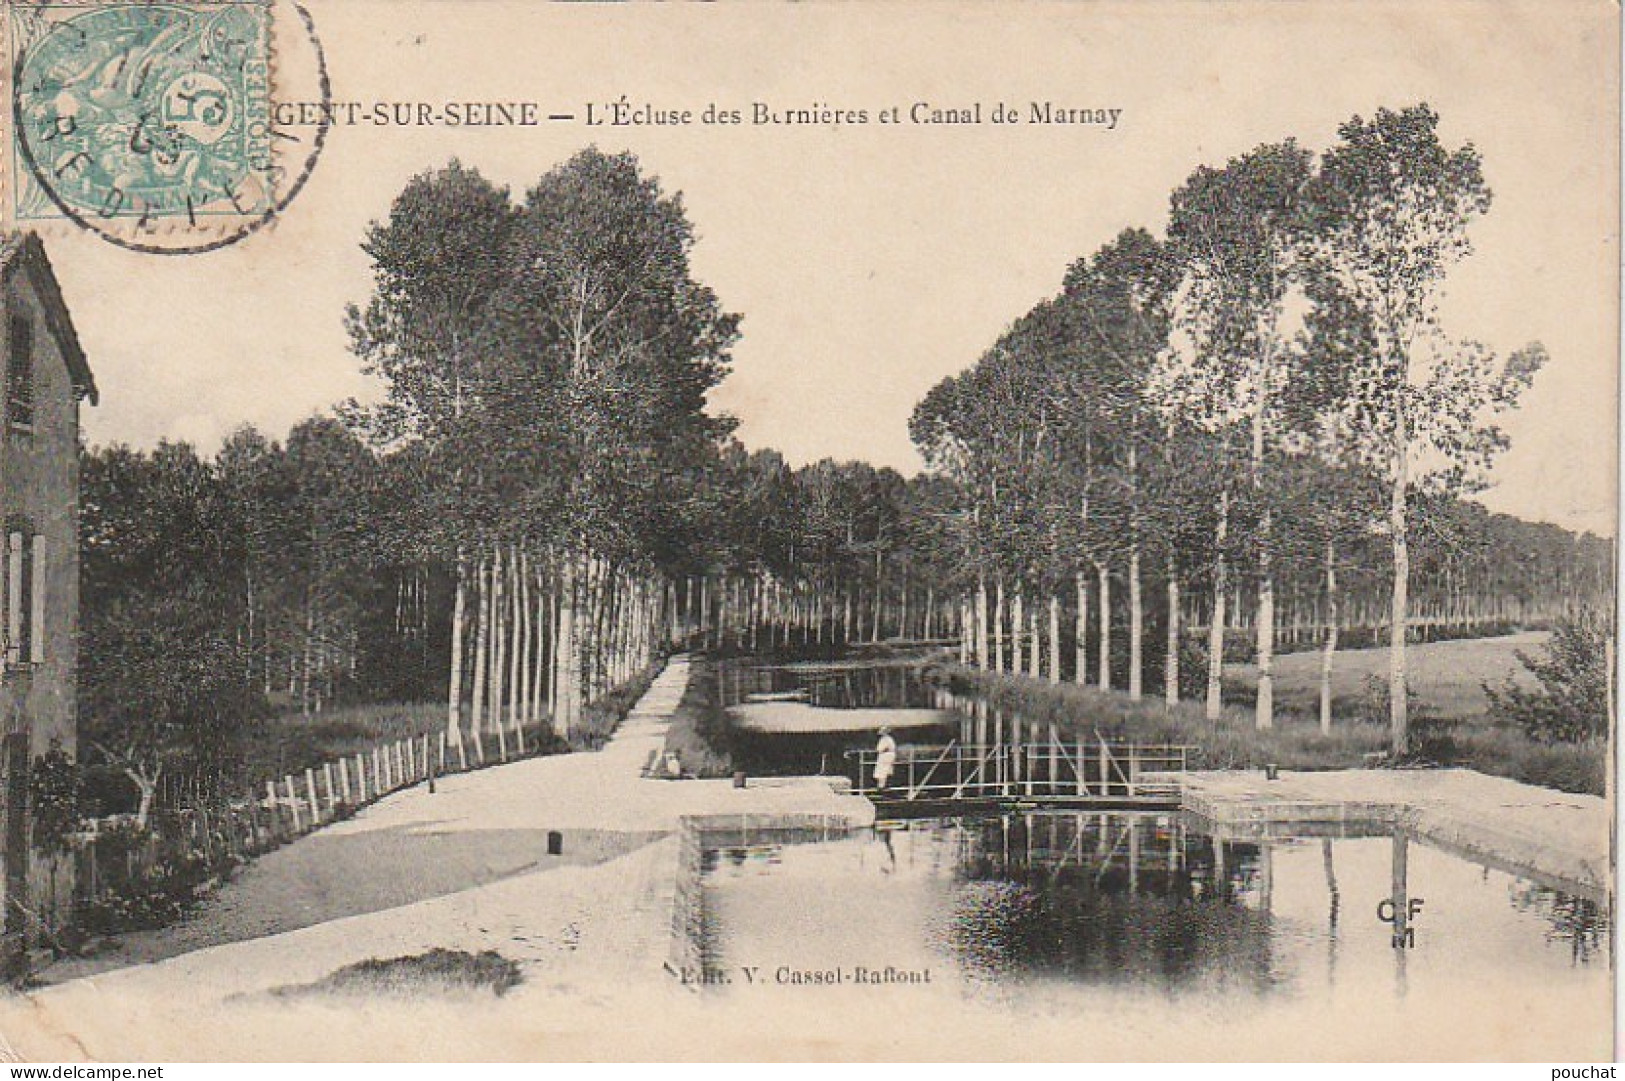 WA 21-(10) NOGENT SUR SEINE - L' ECLUSE DES BERNIERES ET CANAL DE MARNAY  - 2 SCANS - Nogent-sur-Seine